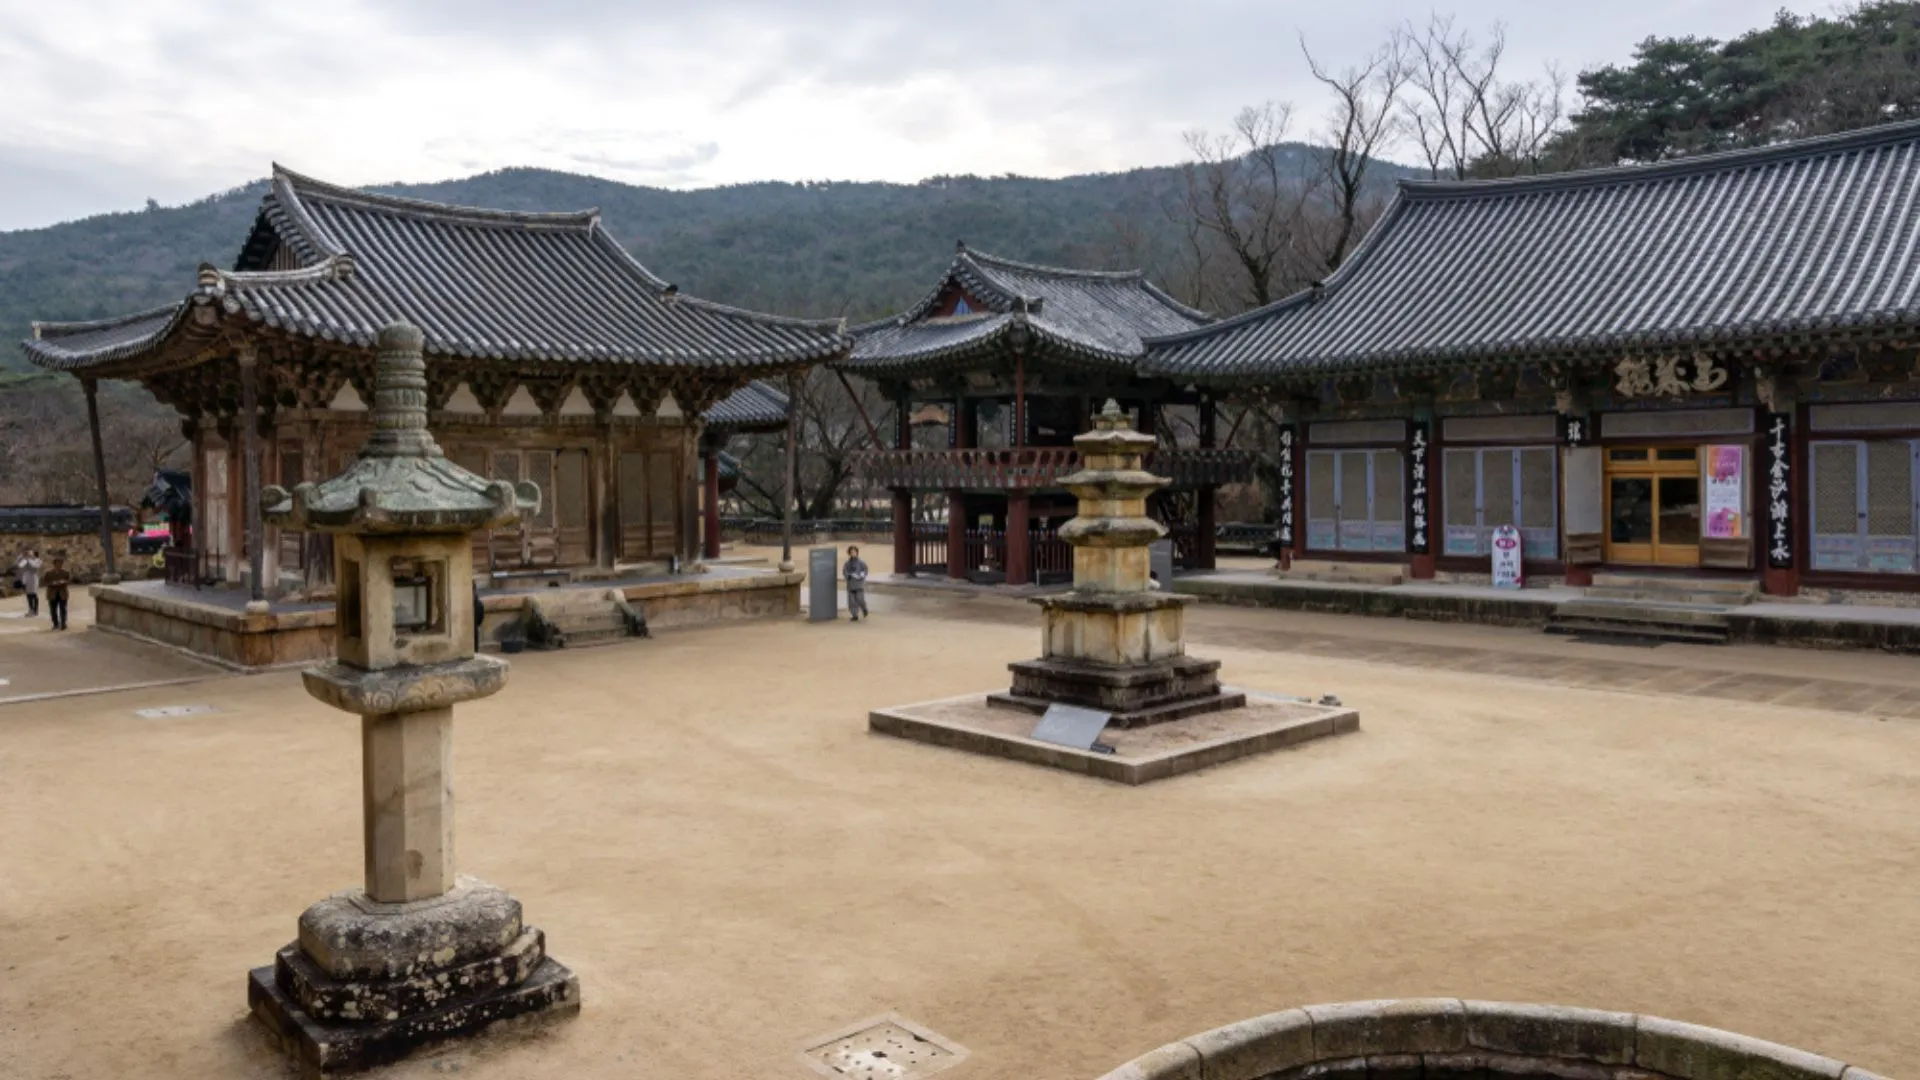 Đền Tongdosa Đền Tongdosa Tín dụng hình ảnh: Aaron Choi / Shutterstock Chùa Tongdosa, một viên ngọc quý nổi tiếng ở Hàn Quốc, là hiện thân của tinh hoa giác ngộ và giáo lý của Đức Phật. Điều bất thường là không có tượng Phật lớn trong chính điện hoặc trong khuôn viên chùa, nên nó thường được gọi là Ngôi chùa không có tượng phật. Được thành lập vào năm 646 CN bởi Master Jajang, Tongdosa không chỉ là một ngôi chùa; nó cũng là một kho tàng gồm hơn 800 tài sản văn hóa và hơn thế nữa.  Là quần thể chùa lớn nhất Hàn Quốc với 65 công trình kiến ​​trúc, môi trường thanh bình, rải rác với các gian nhà, chùa và đèn lồng đá, phản ánh sự tĩnh lặng mà các nhà sư Seon theo đuổi. Tongdosa là một trung tâm đào tạo tu sĩ quan trọng ở Hàn Quốc và được tôn vinh là một ngôi chùa di tích, nơi lưu giữ xá lợi của Đức Phật. Điều đáng chú ý là Beopdeung (ngọn nến trong chùa) đã được thắp sáng liên tục trong hơn một thiên niên kỷ.